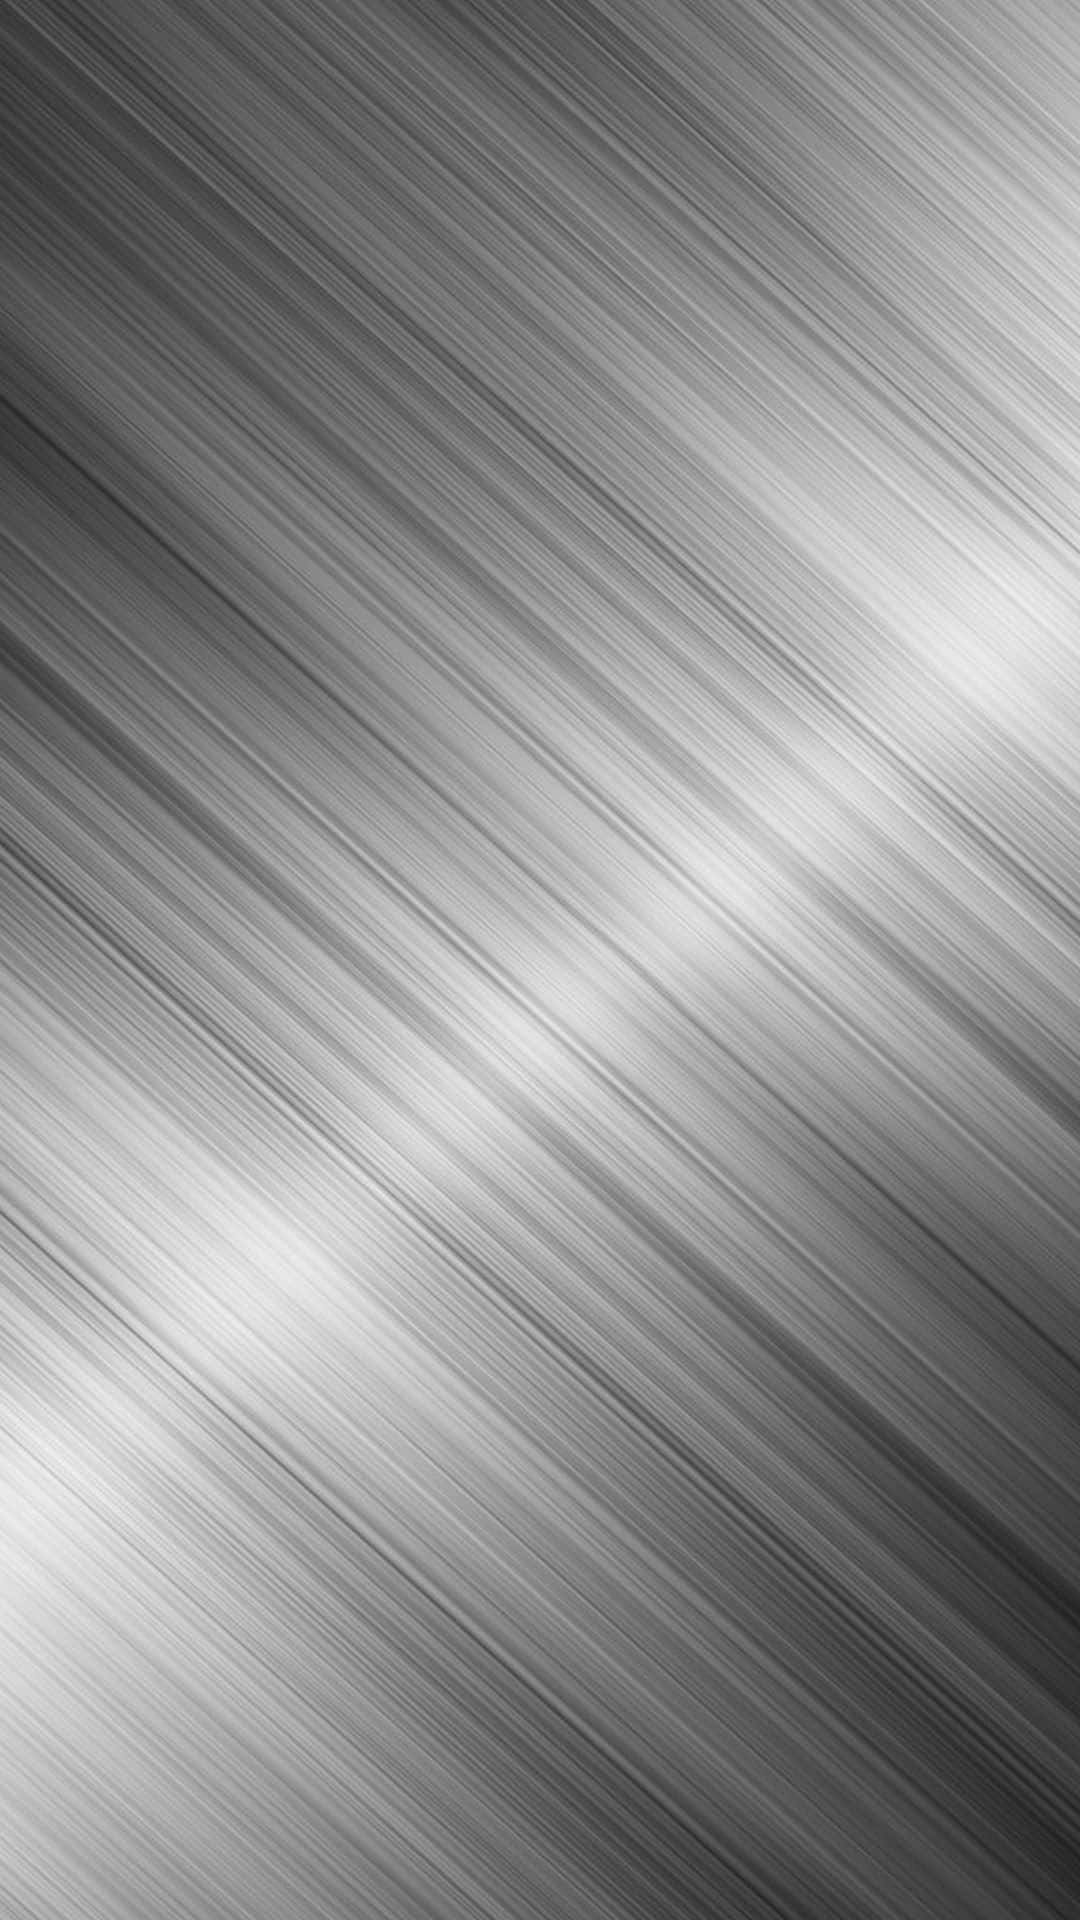 Eineglänzende Schwarze Metallische Oberfläche Spiegelt Sich In Einem Hell Beleuchteten Raum Wider. Wallpaper